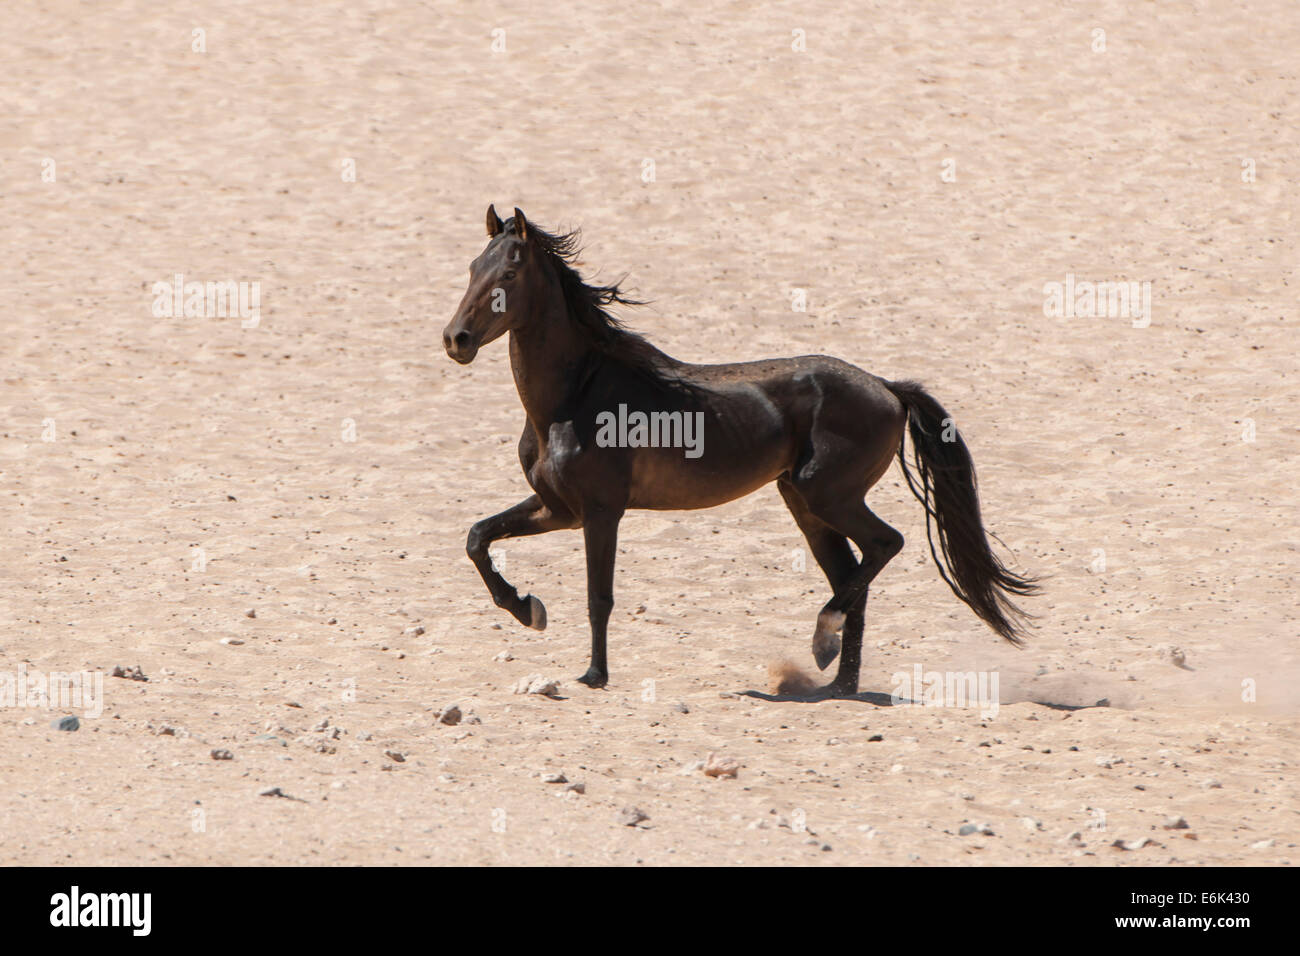 Cheval sauvage dans le désert du Namib, un descendant des chevaux de la force de protection coloniale allemande dans le Sud-Ouest Africain allemand Banque D'Images